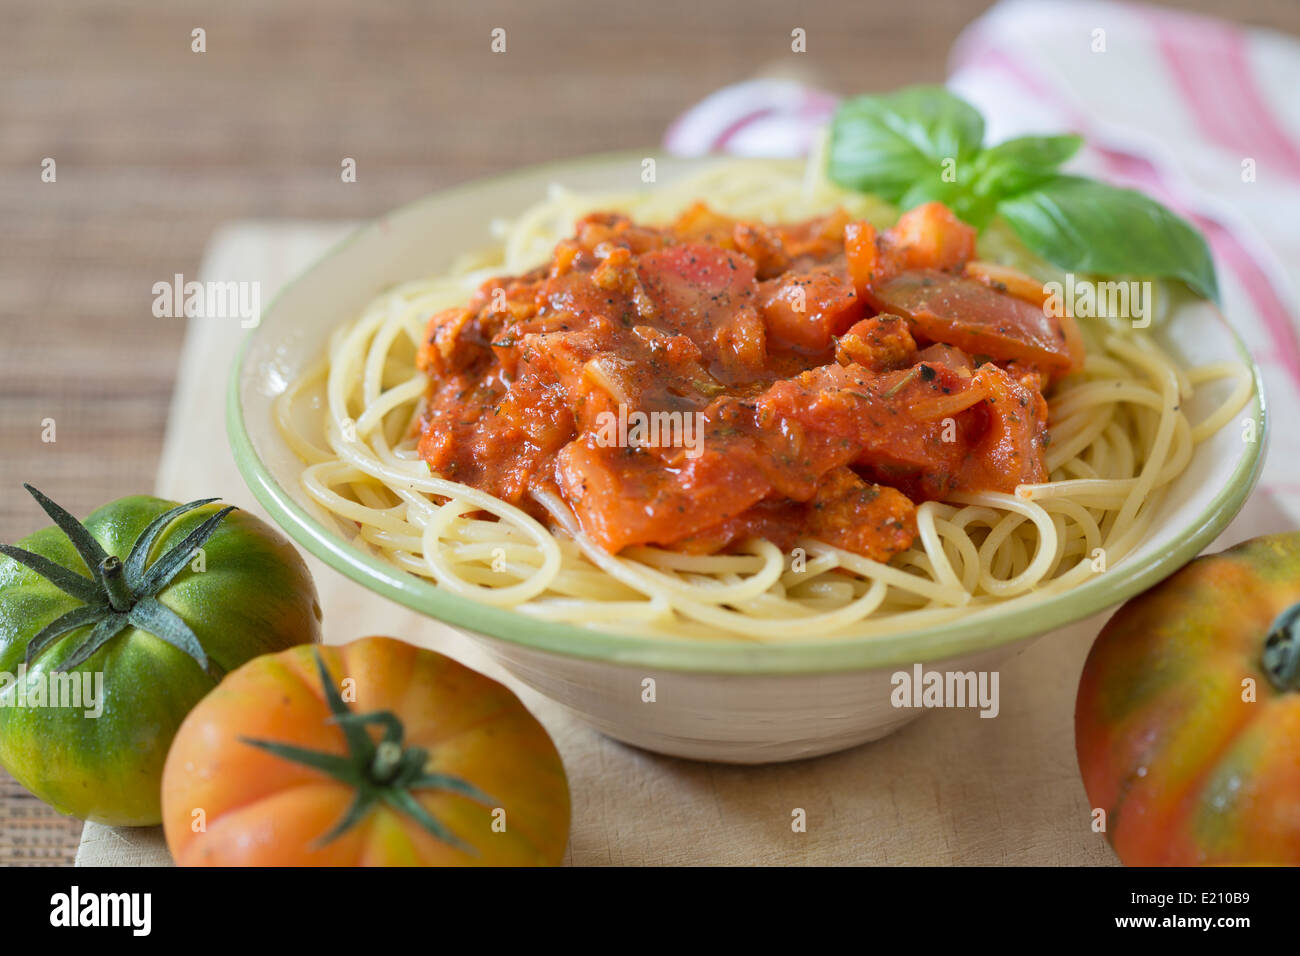 Plat de spaghetti avec sauce bolognaise tomate végétarien sur planche de bois frais et tomates Raf. Banque D'Images